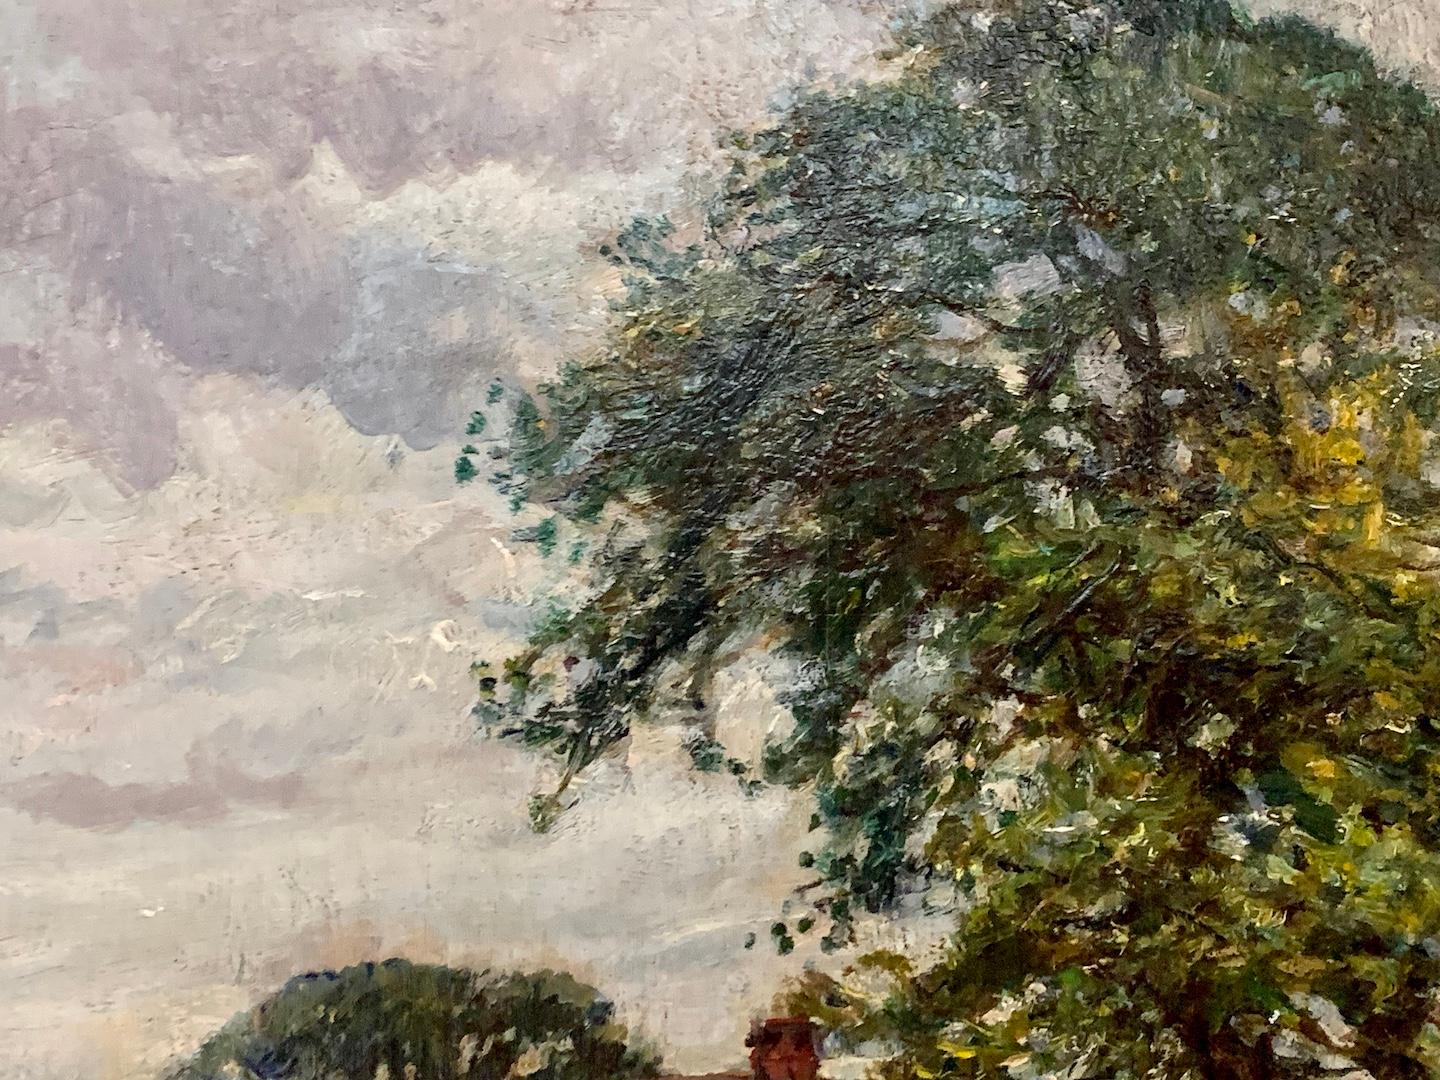 Hervorragende englische Impressionistenlandschaft aus dem späten 19. Jahrhundert mit einem Pferdegespann in einem Dorf.

William Mark Fisher wurde 1893 von George Moore als 